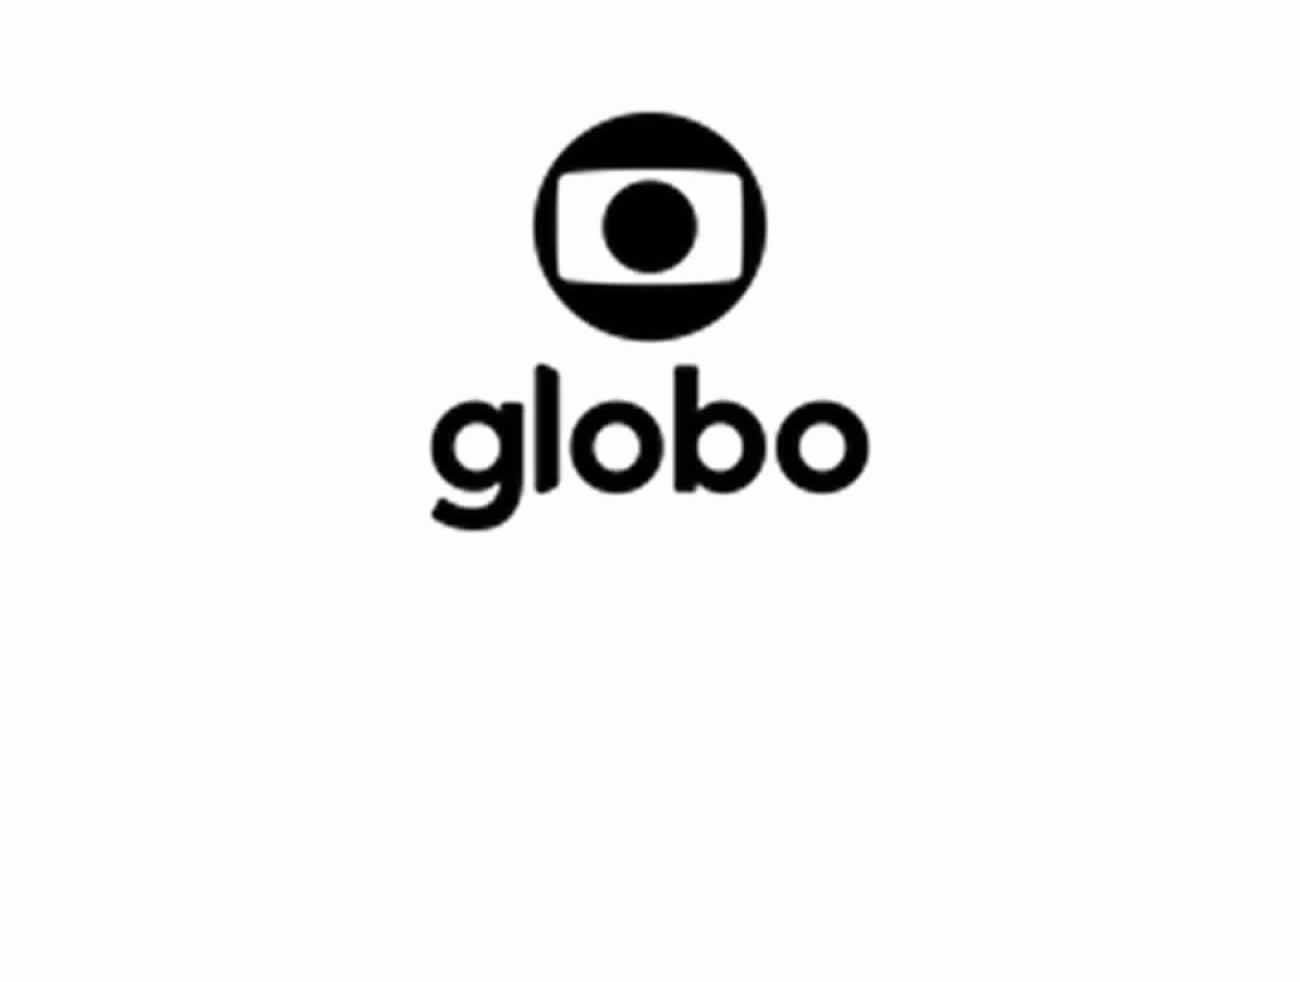 Globo lança solução de publicidade segmentada em canais lineares